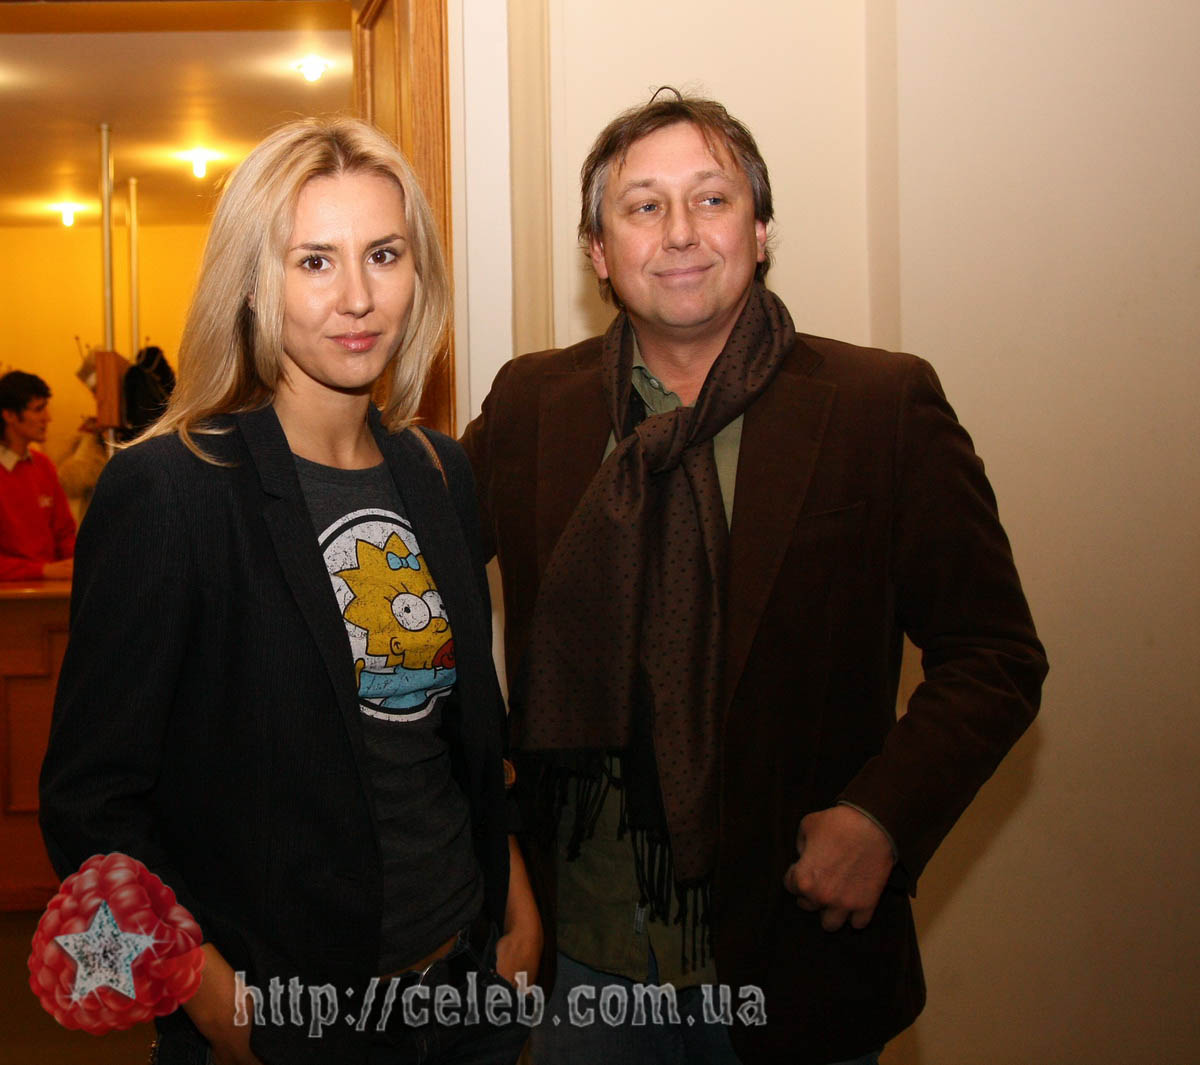 Режиссер Семен Горов привел супругу Яну Помазан - вдоновение нужно всем.